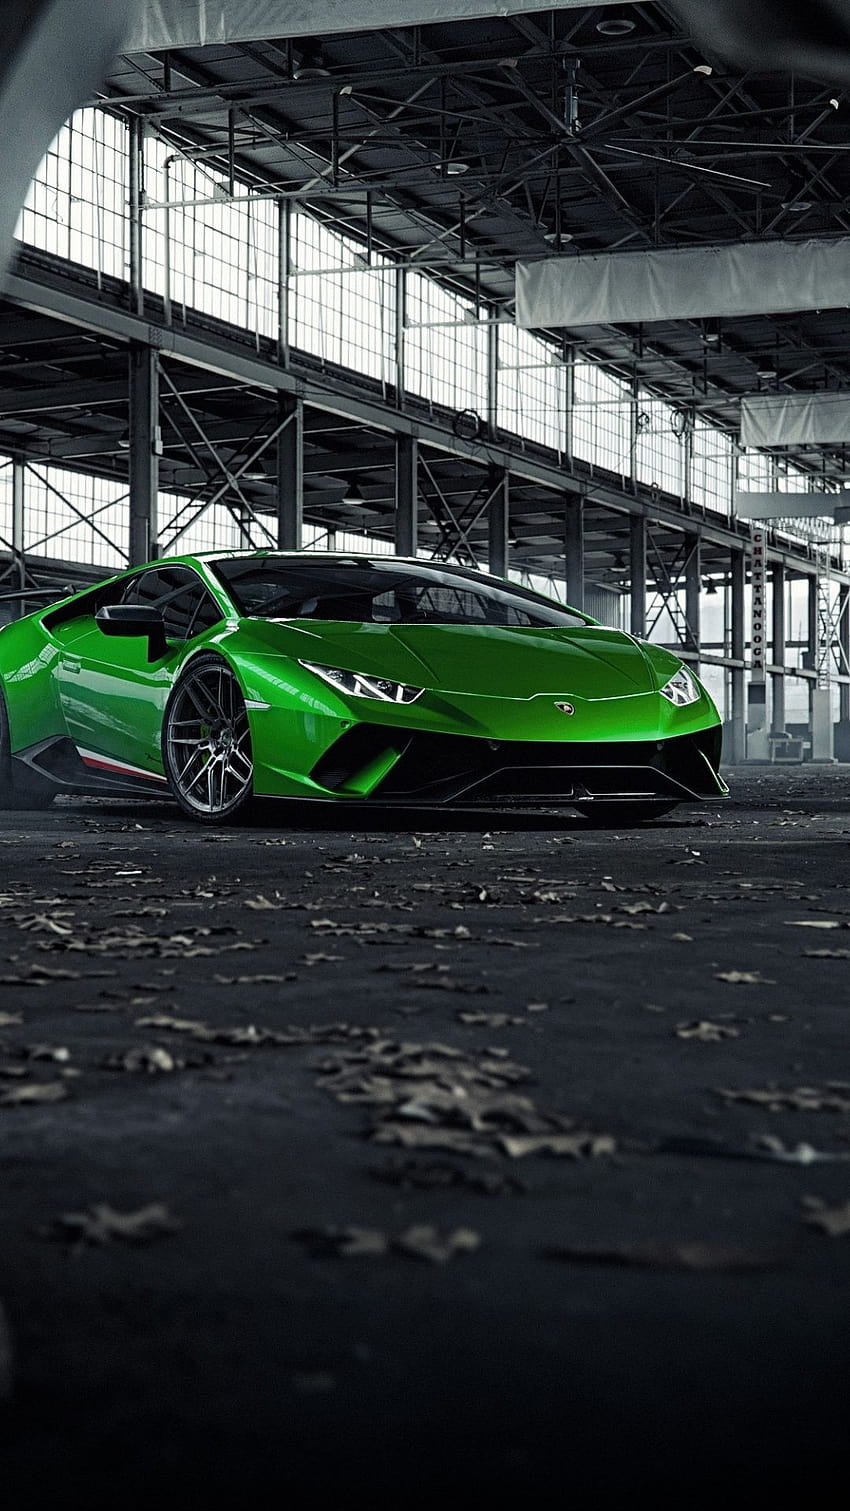 Lamborghini Hintergrundbild 850x1511. Green Lamborghini Huracan, sports car, sport car aesthetic HD phone wallpaper